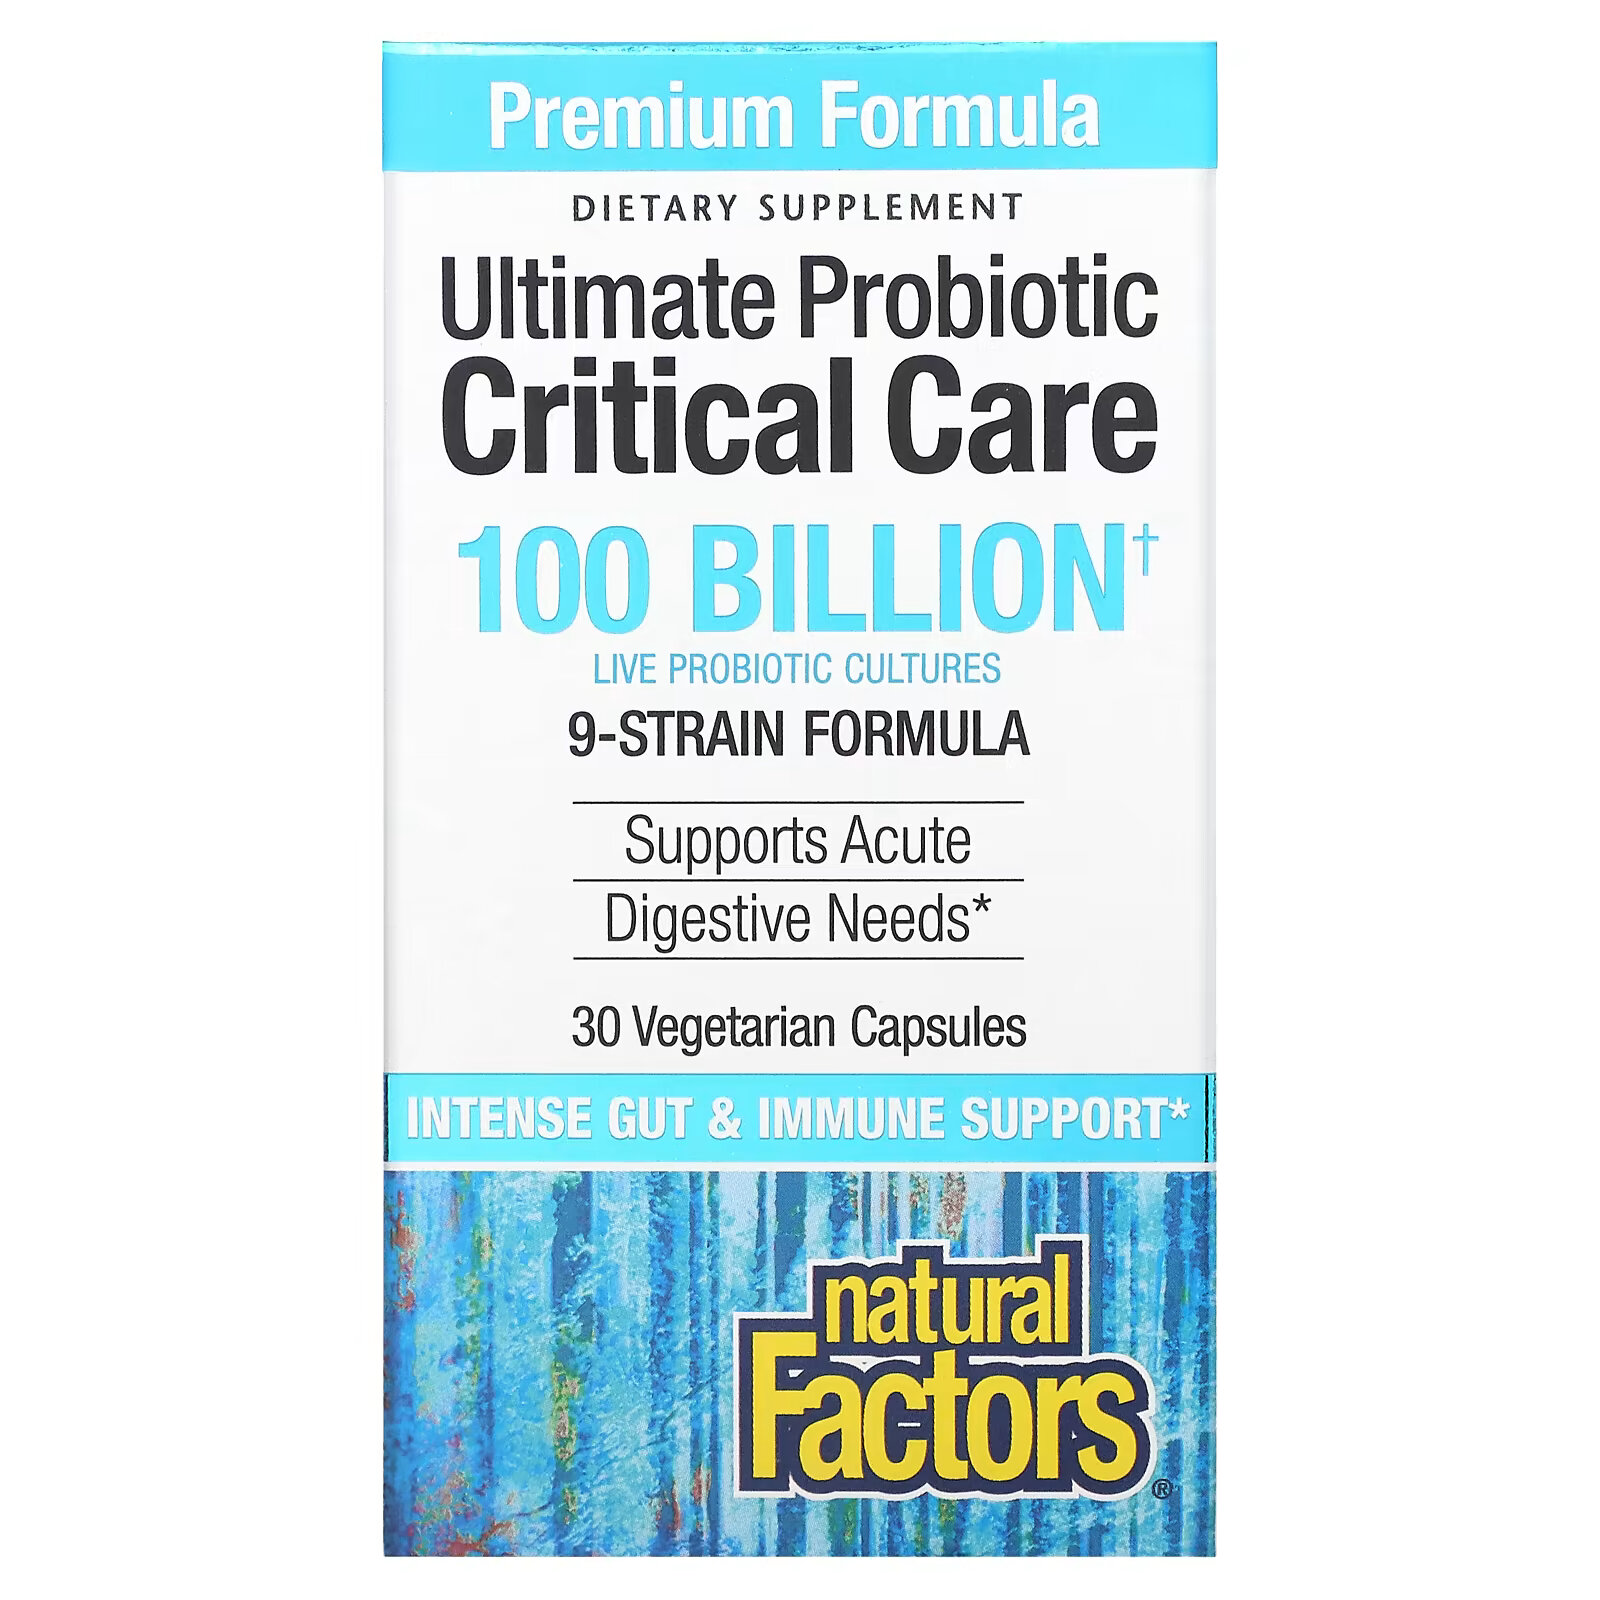 Natural Factors, Ultimate Probiotic Critical Care, пробиотики для лечения критических состояний, 100 миллиардов КОЕ, 30 вегетарианских капсул